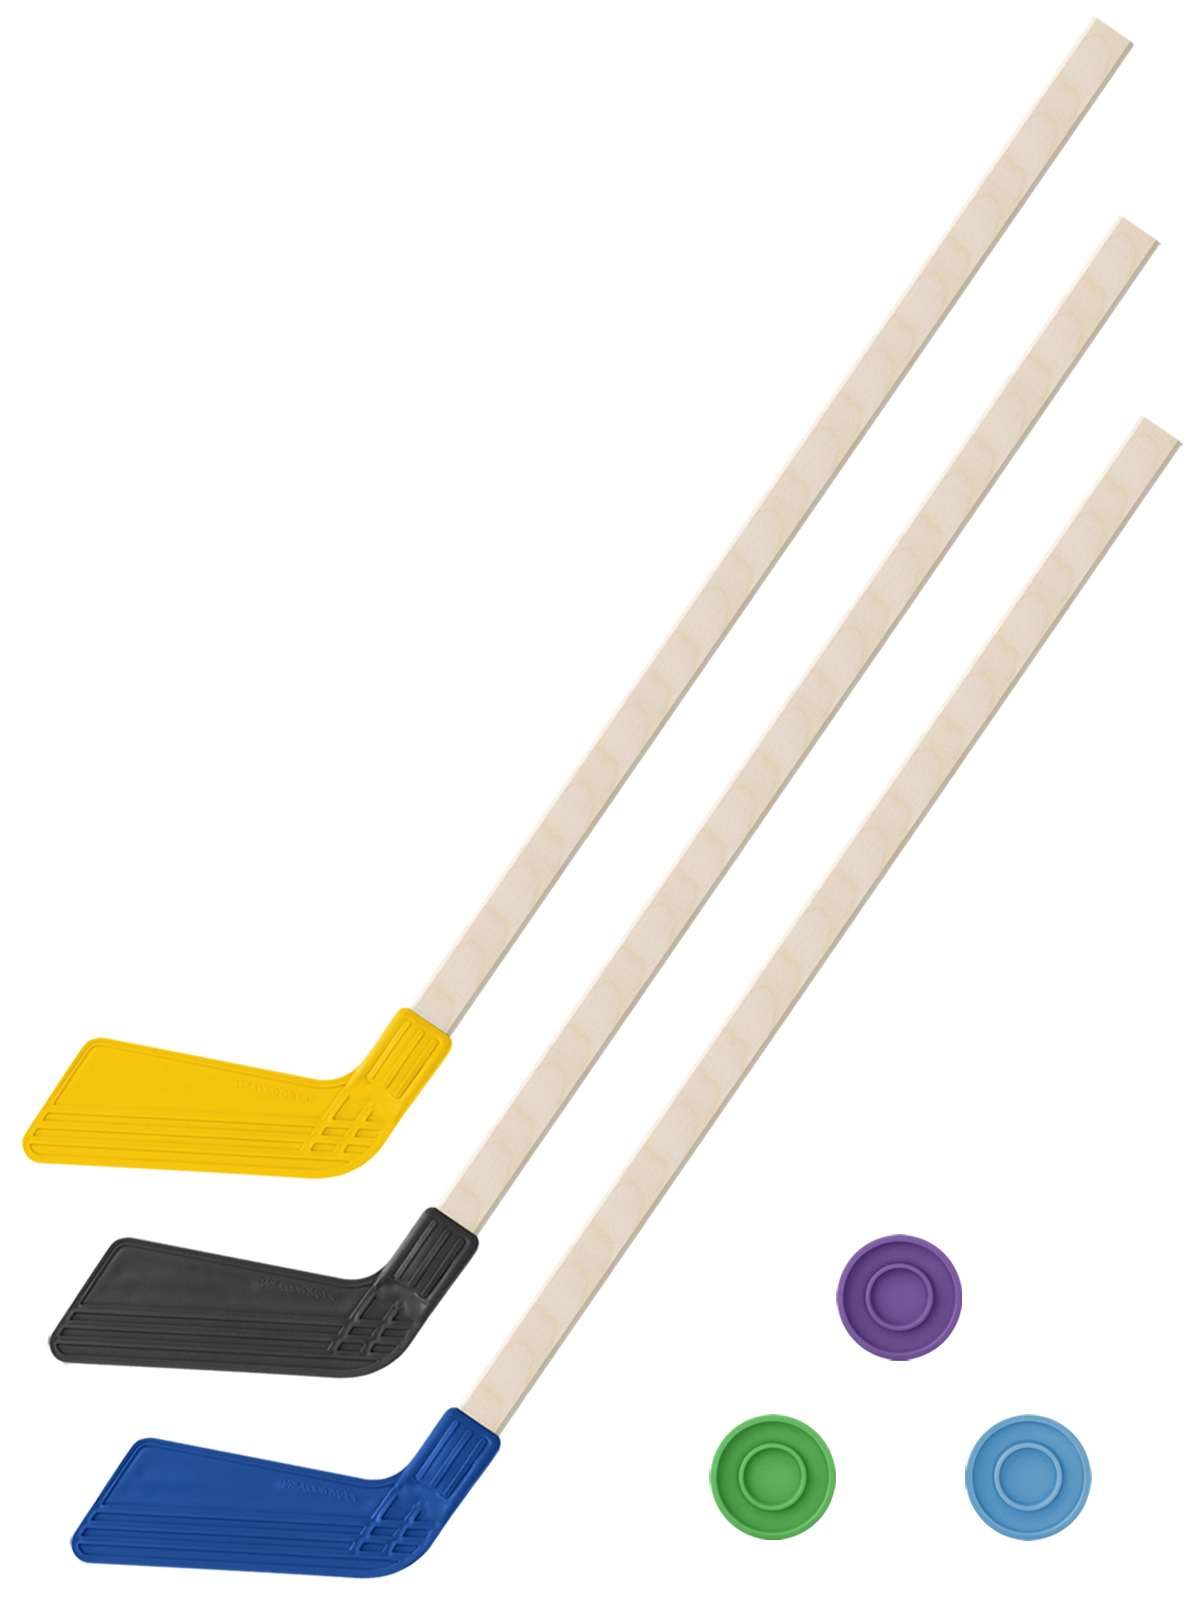 Детский хоккейный набор Задира-плюс 3 в 1 Клюшка хоккейная 80см (жёл,черн,син) + 3 шайбы инсектицид борные шайбы от тараканов шайбы 10 шт дохс